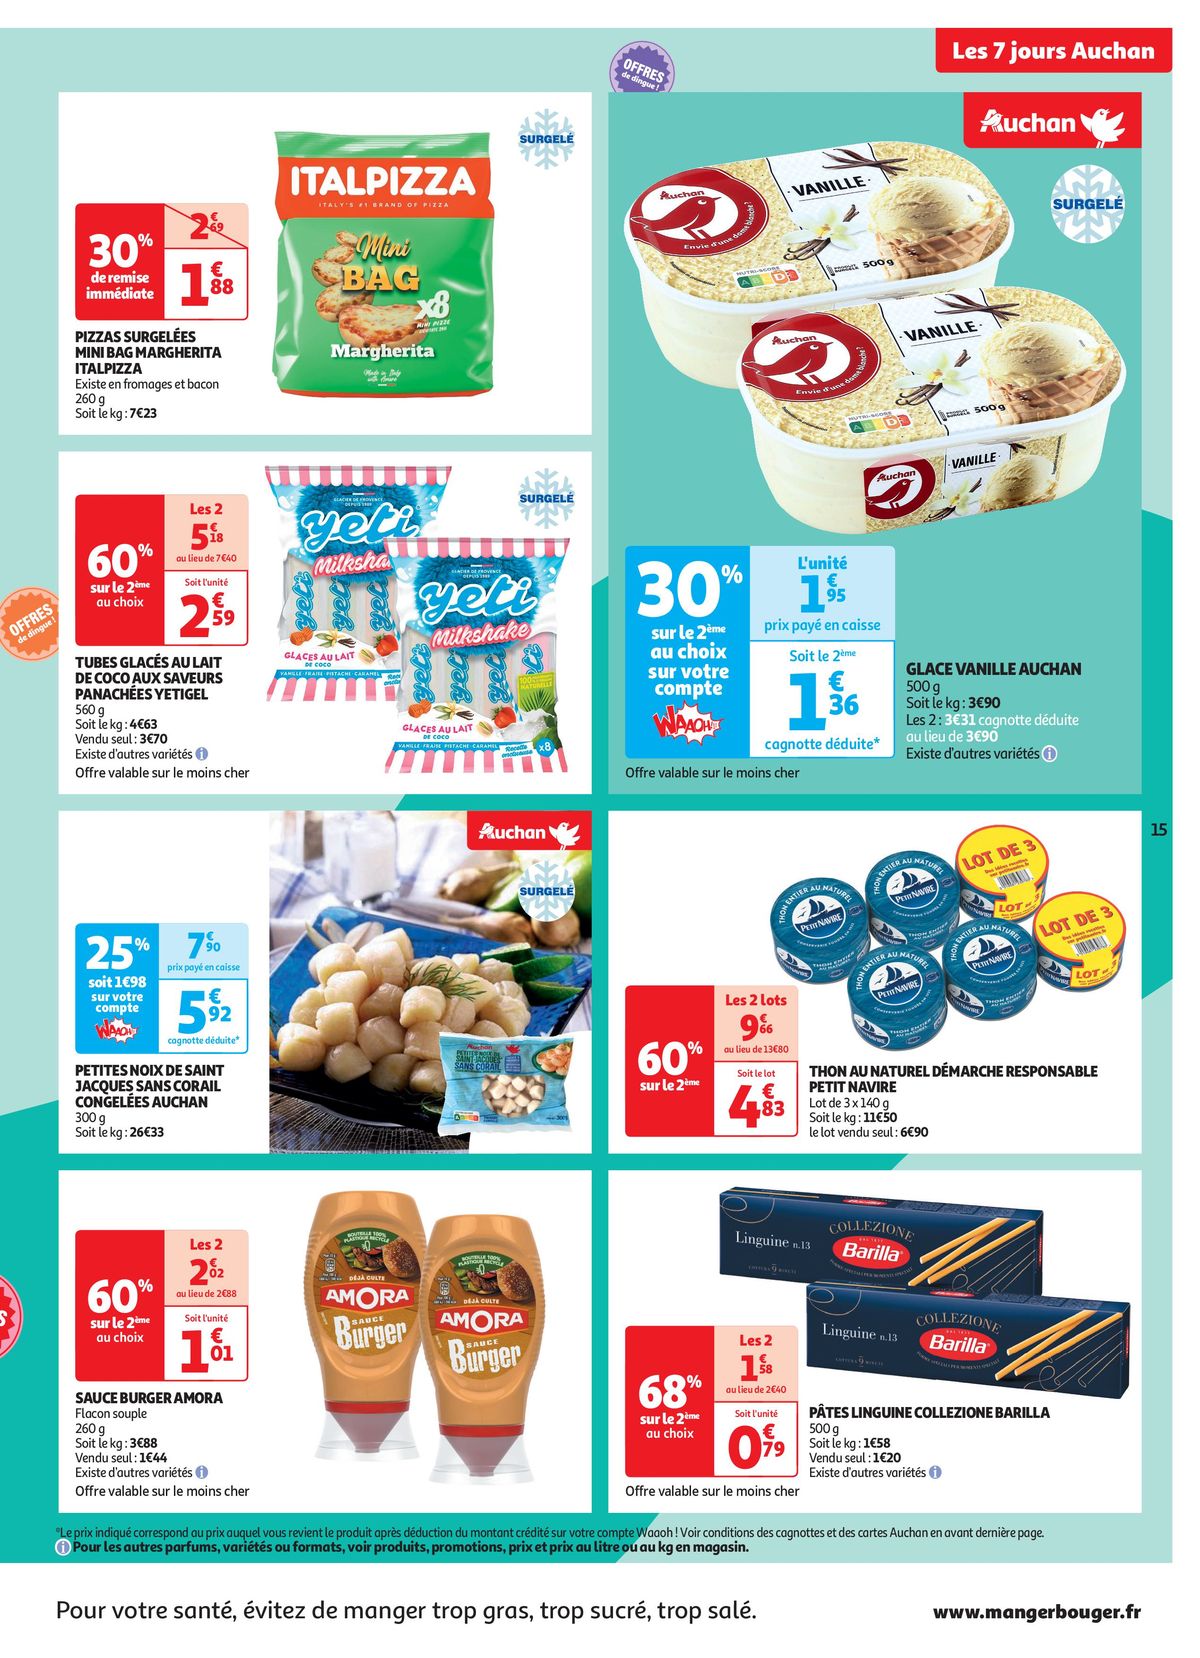 Catalogue C'est les 7 jours Auchan dans votre super !, page 00015